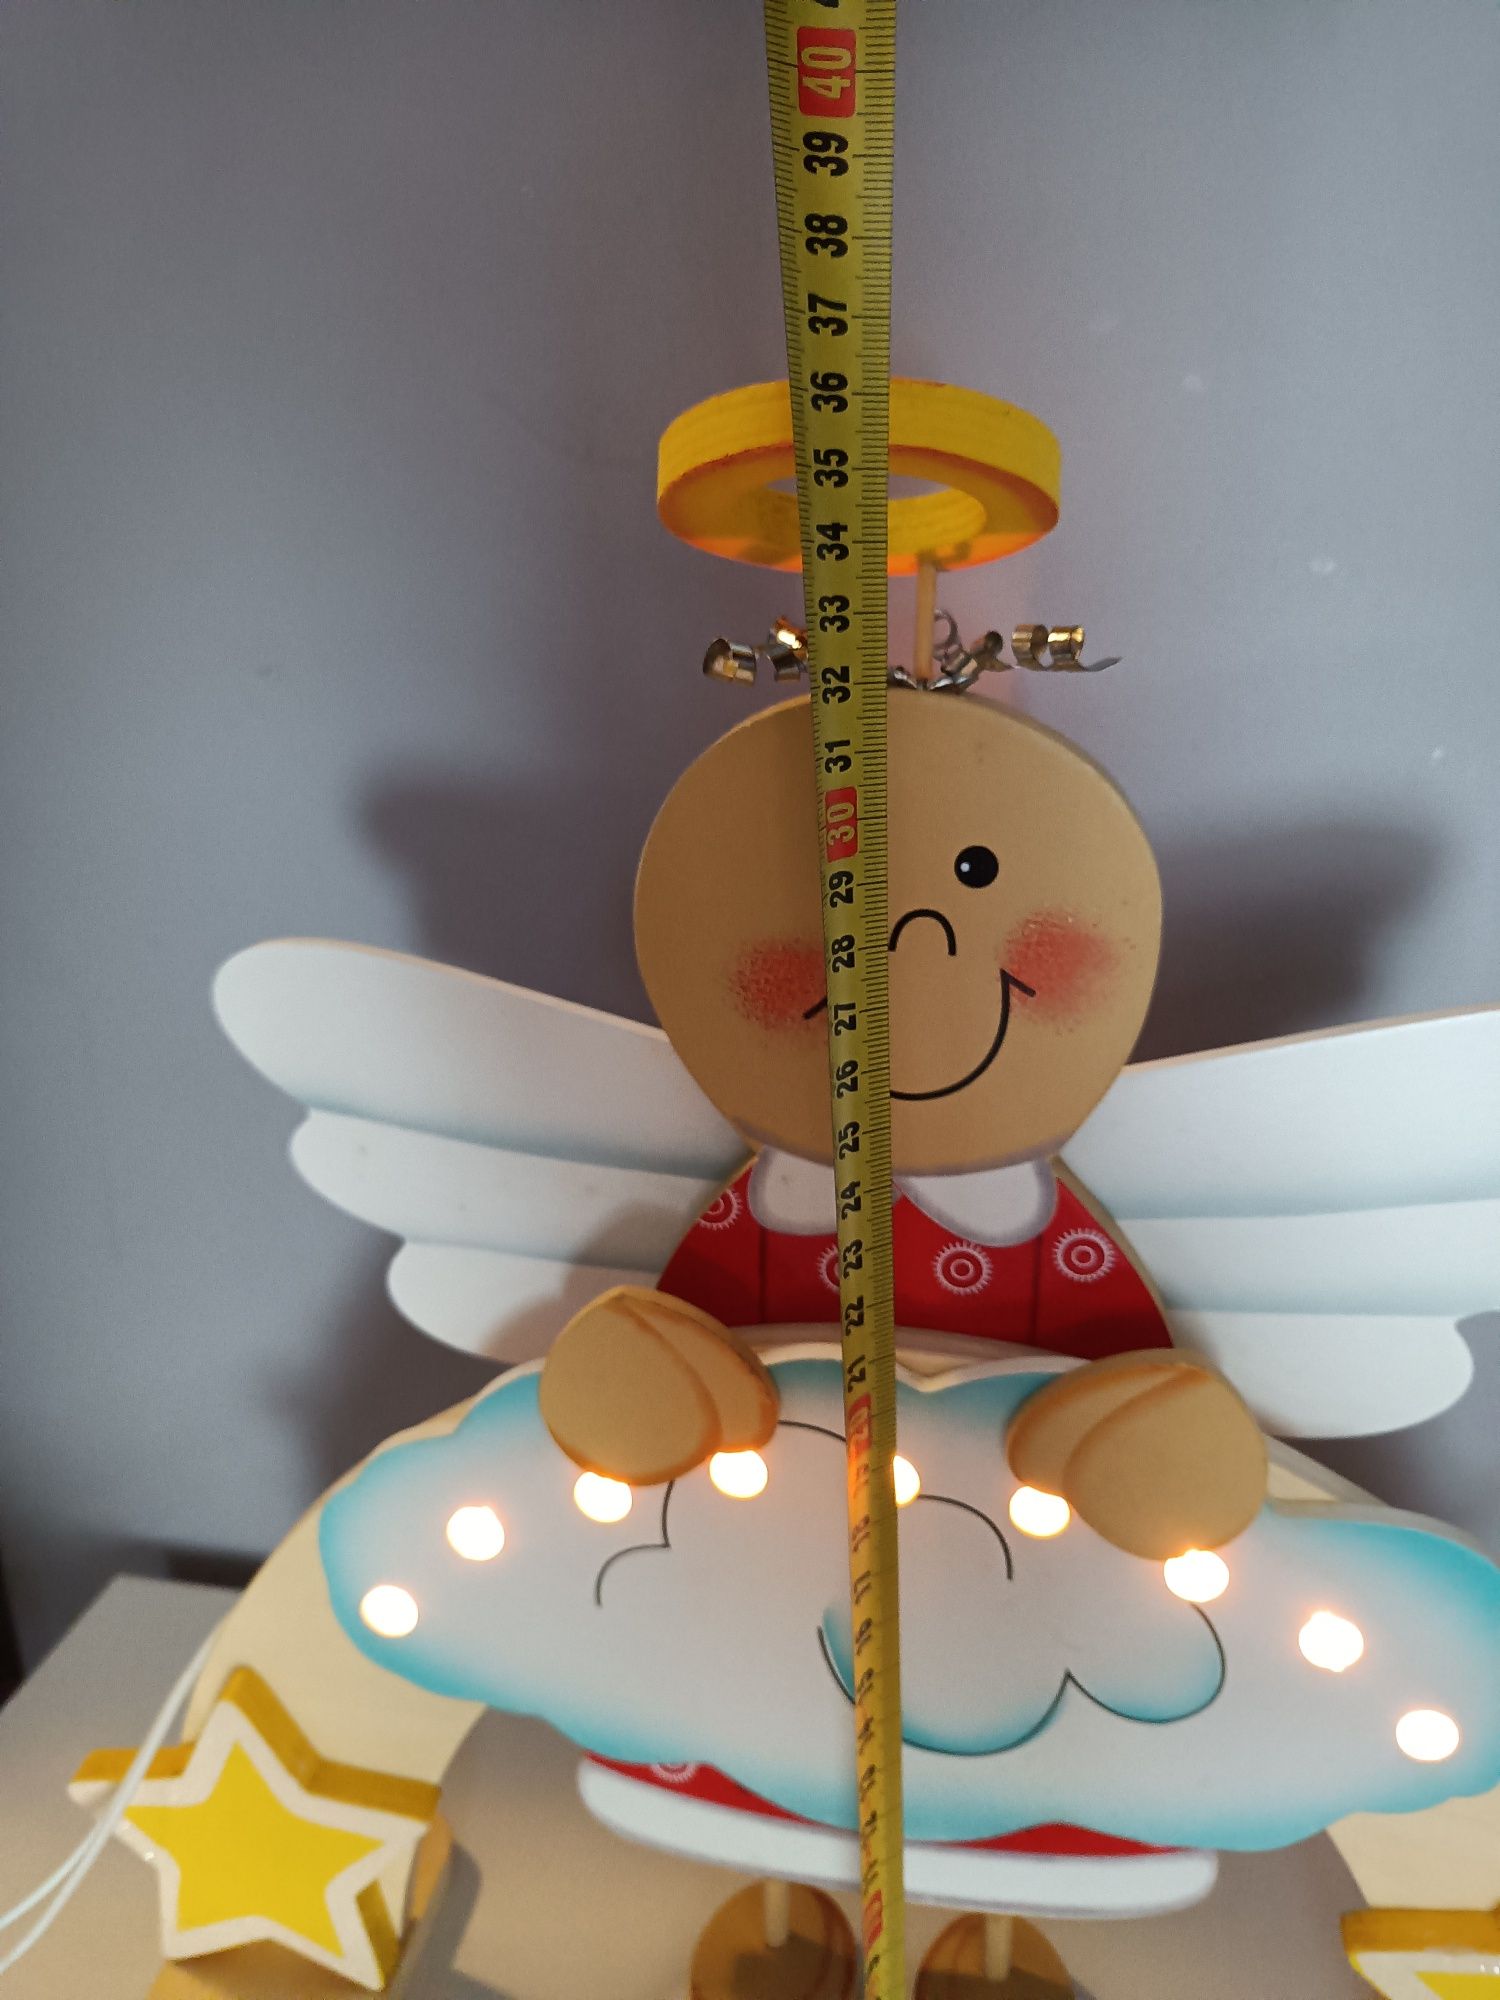 Lampka drewniana aniołek Led Small foot prezent dla dziecka